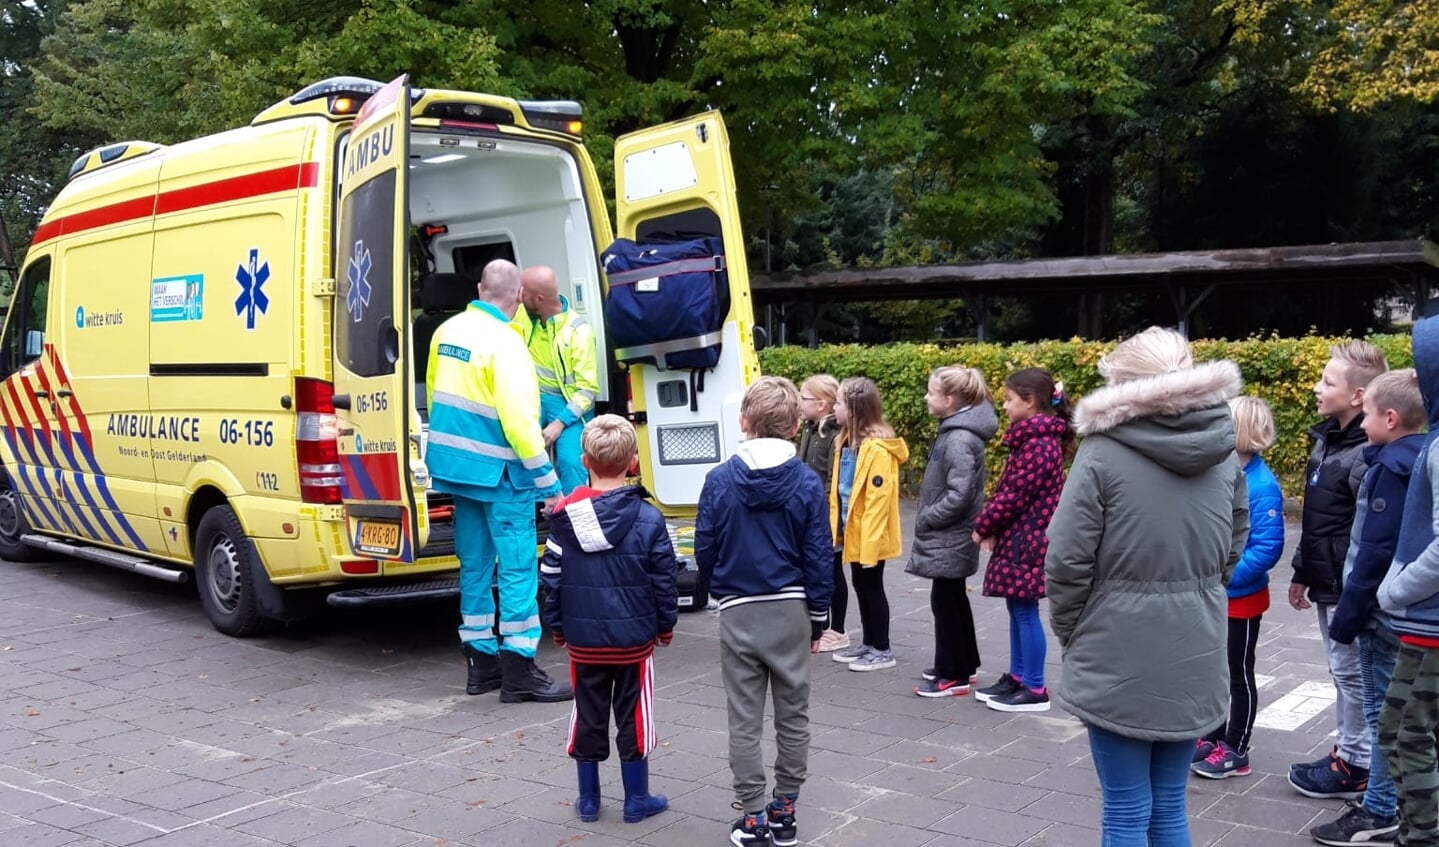 De leerlingen vonden het interessant om een kijkje te nemen in de ambulance. Foto: Sanne Floors